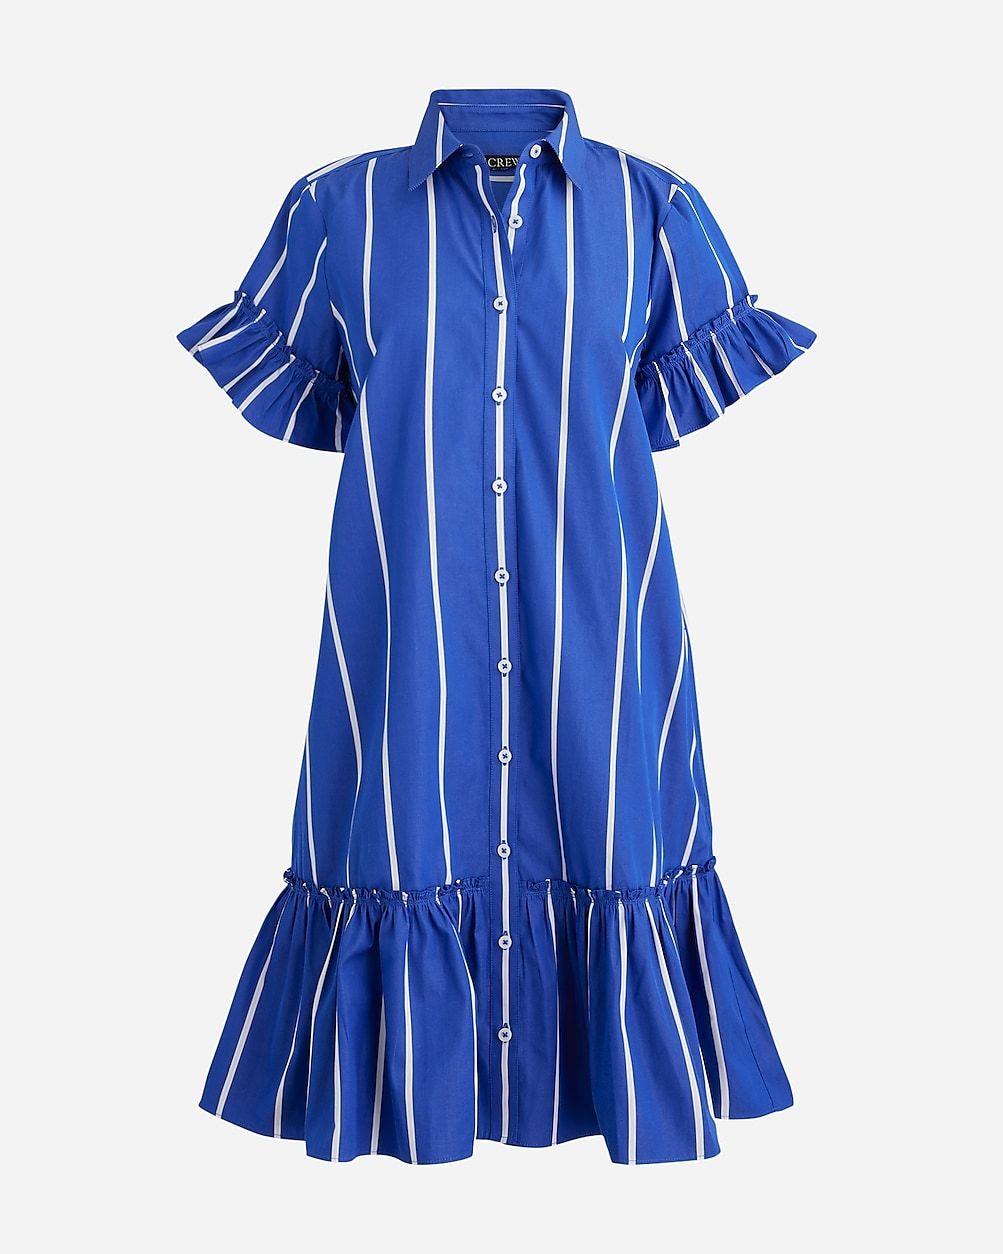 Amelia shirtdress in stripe cotton poplin | J.Crew US